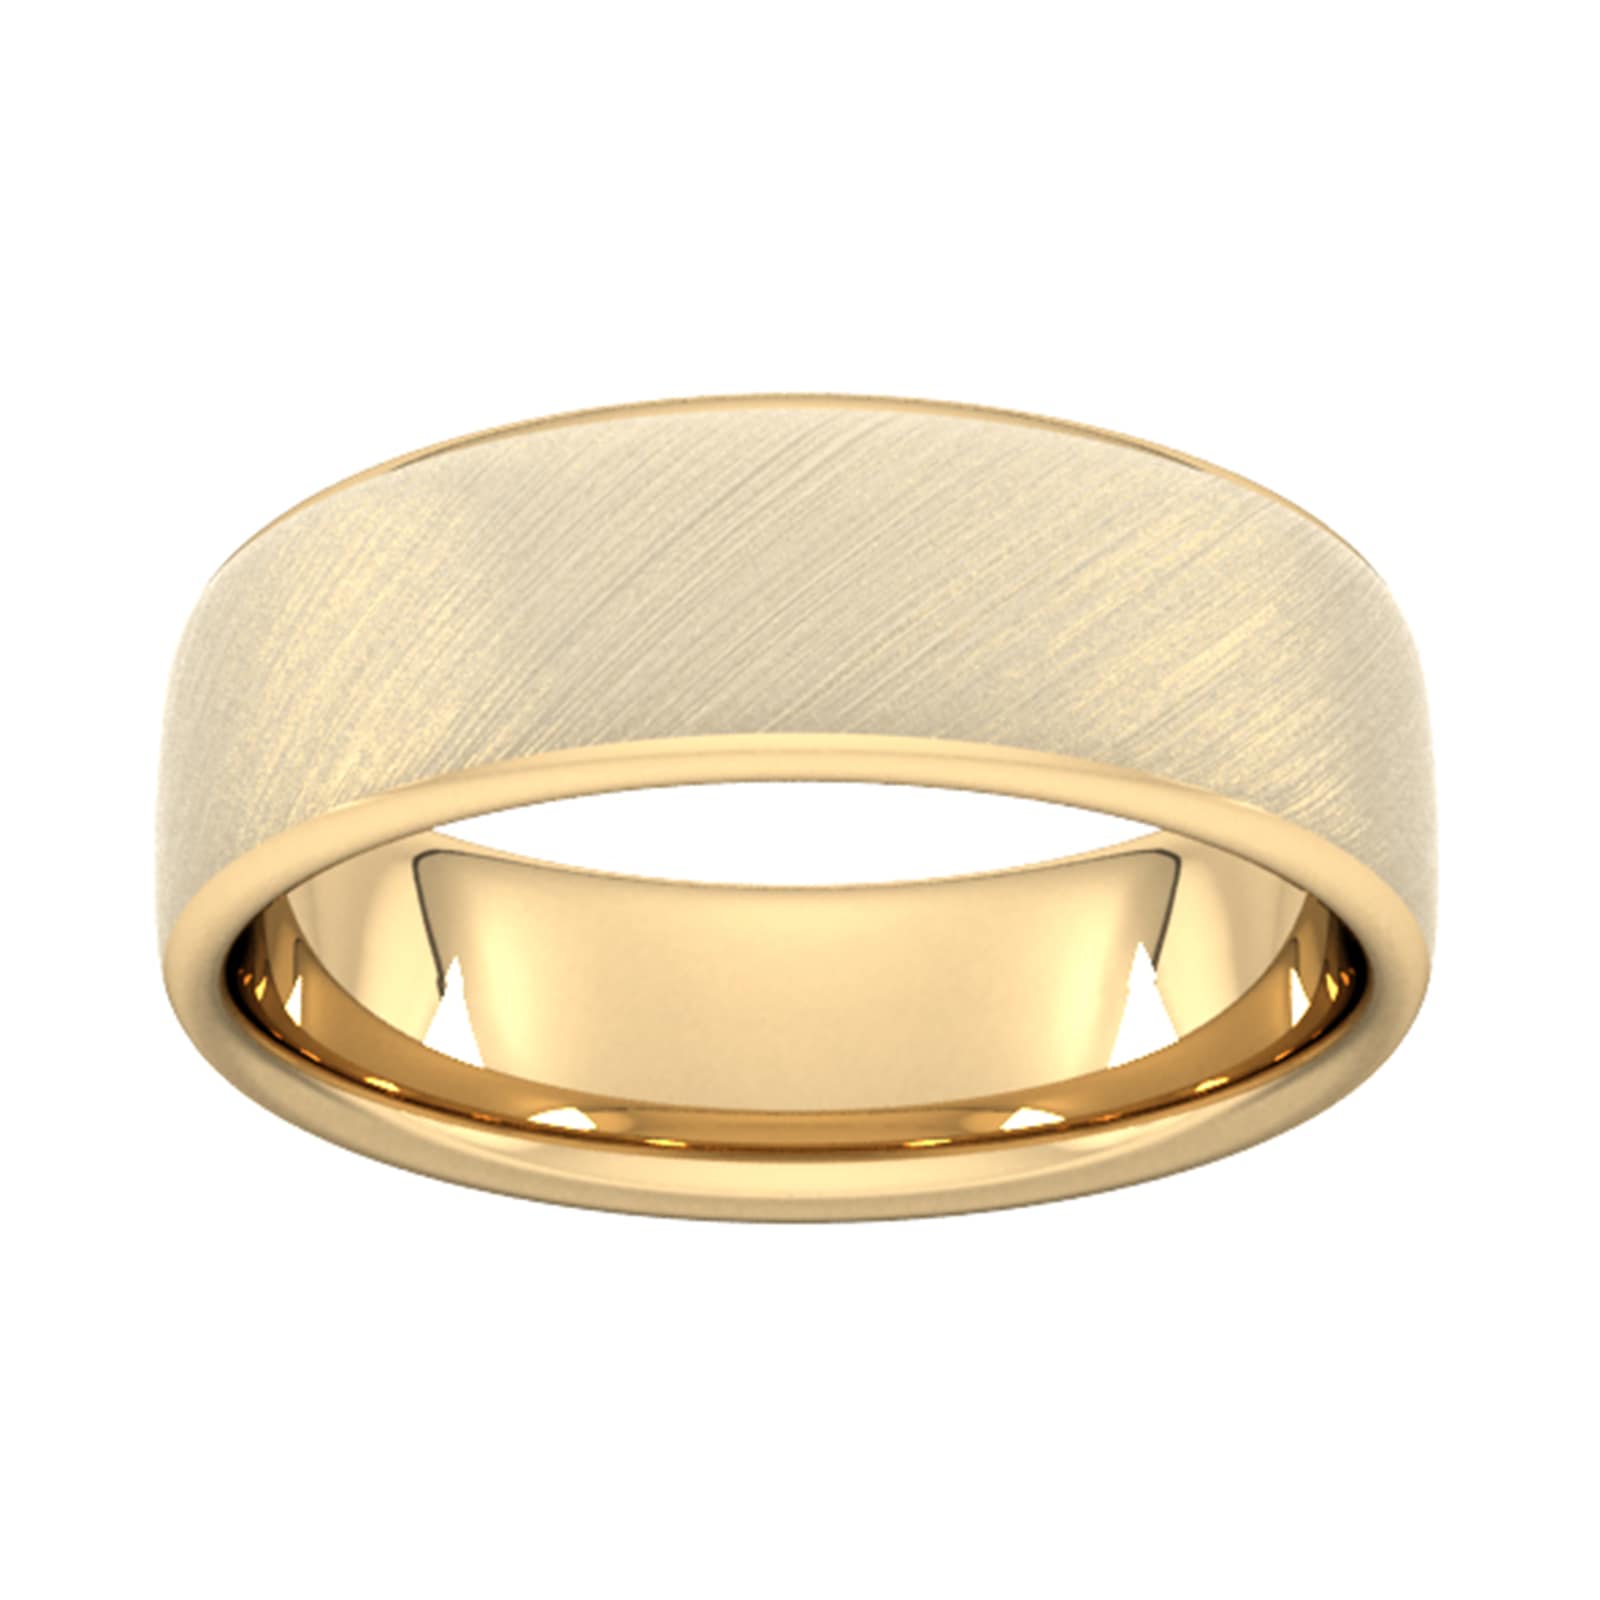 7mm D Shape Heavy Diagonal Matt Finish Wedding Ring In 18 Carat Yellow Gold - Ring Size X